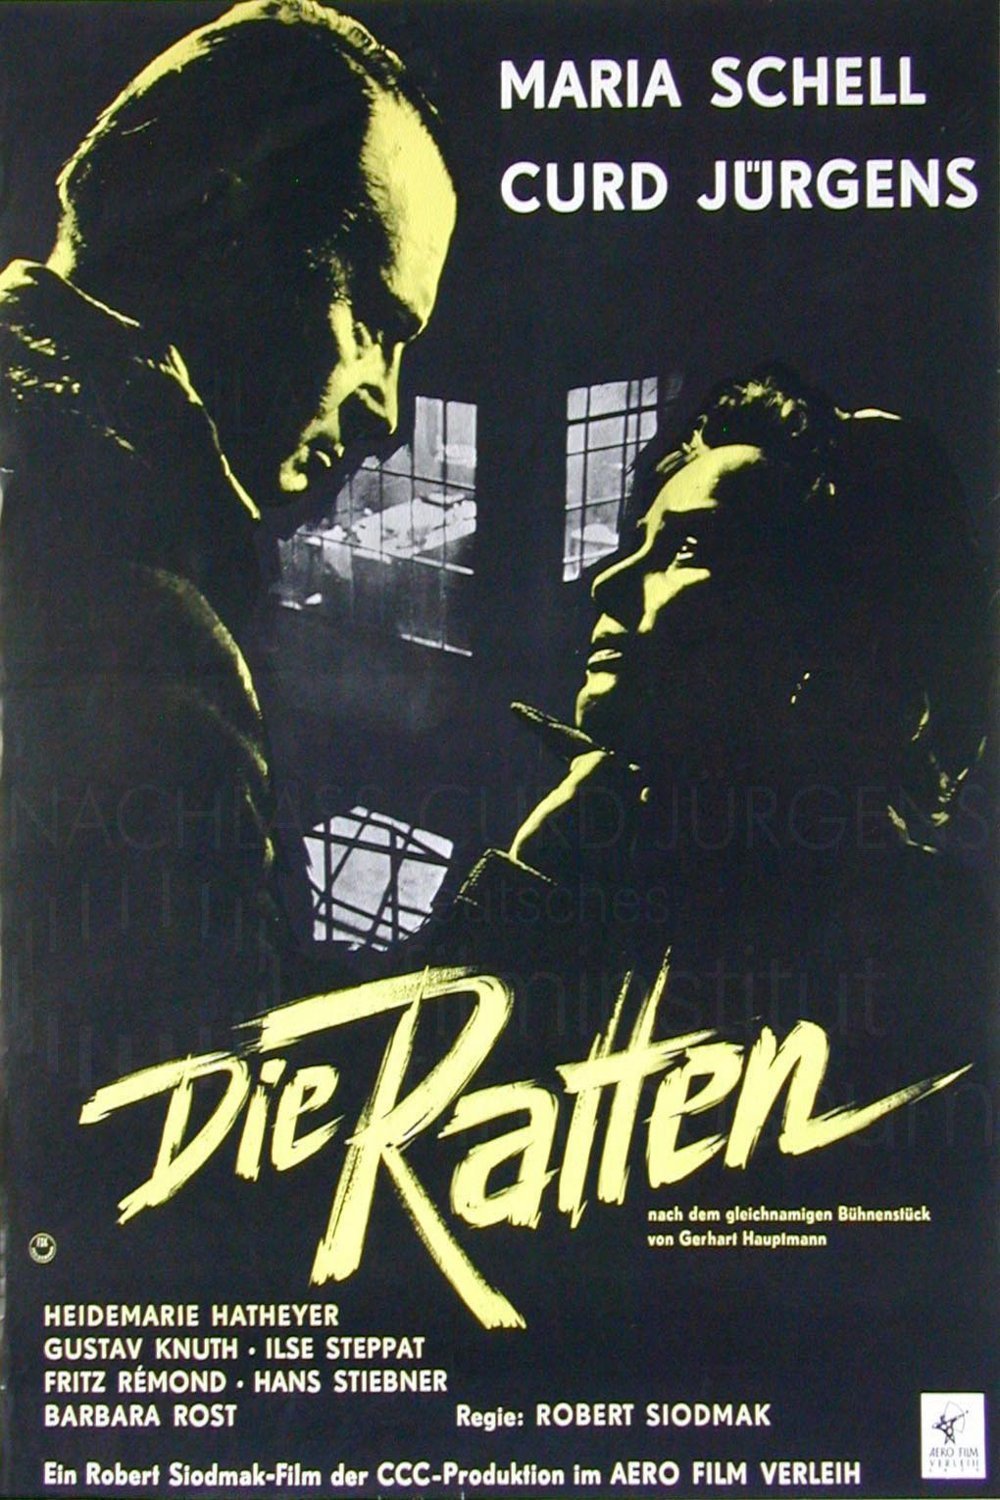 German poster of the movie Die Ratten